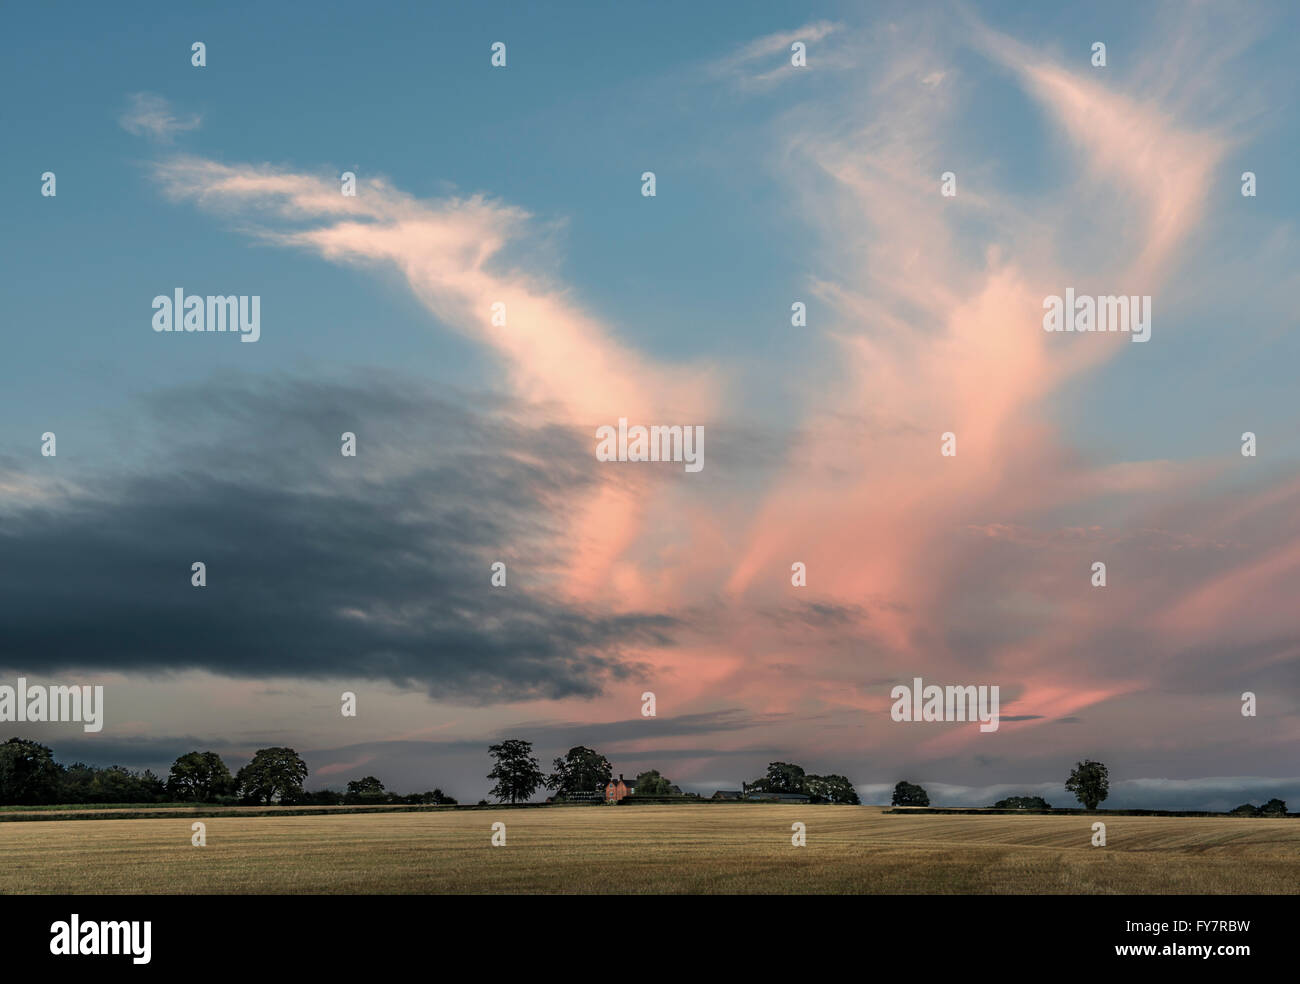 Evening red sky over farmland, Derbyshre, England Stock Photo